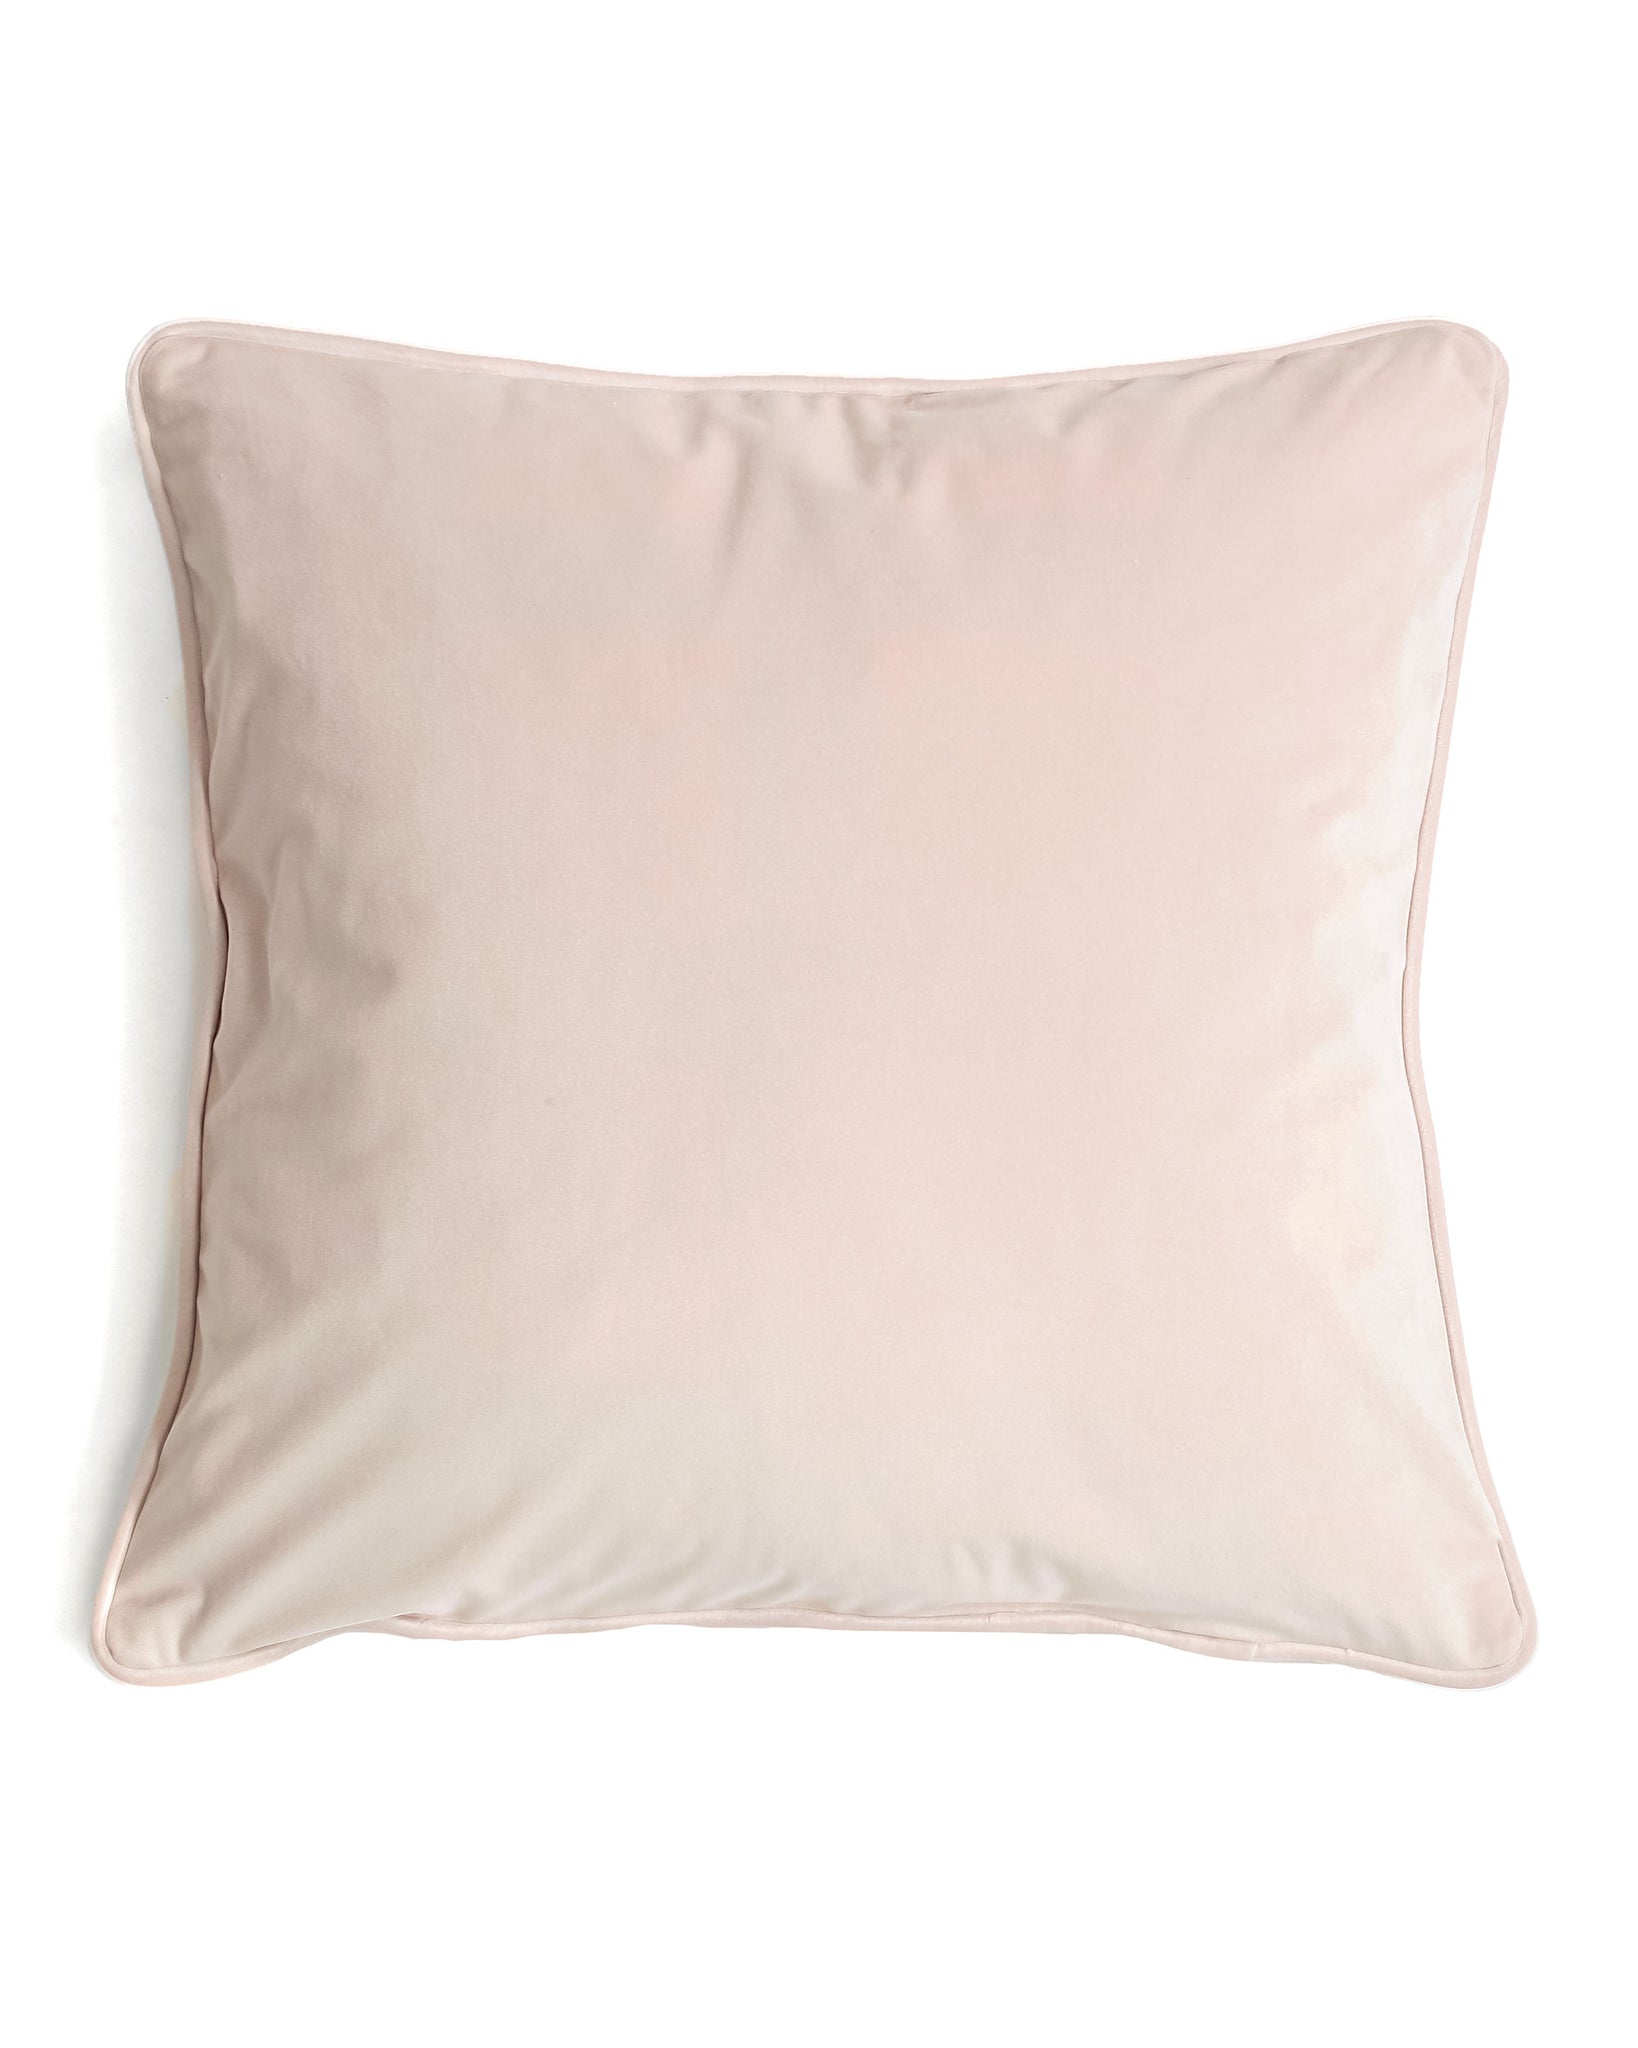 Luxe Velvet Blush Pillow Cover